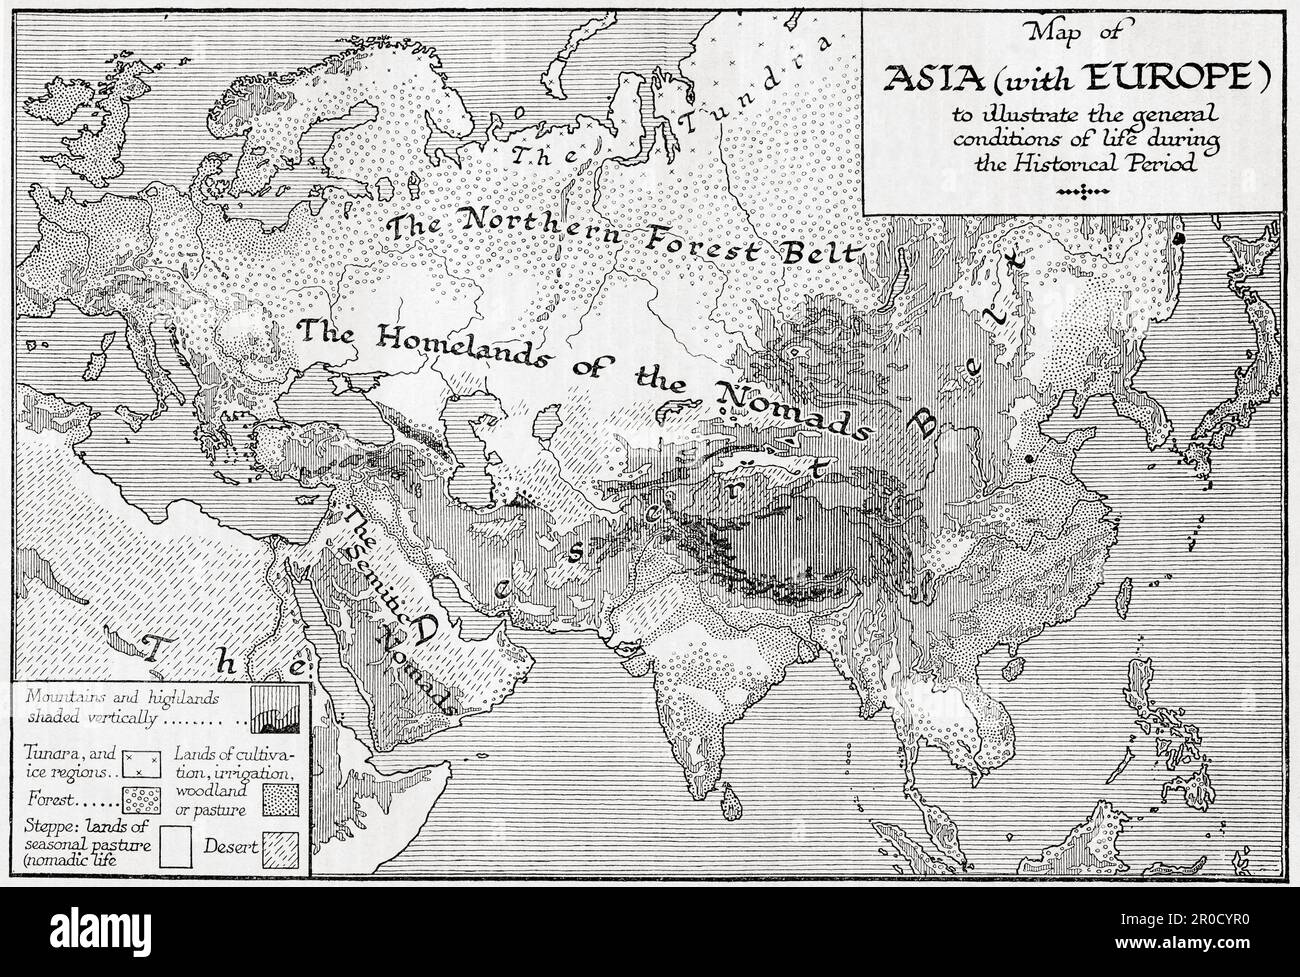 Mapa de Asia con Europa para ilustrar las condiciones generales de vida durante el período histórico. Del libro Esquema de la Historia por H.G. Wells, publicado en 1920. Foto de stock